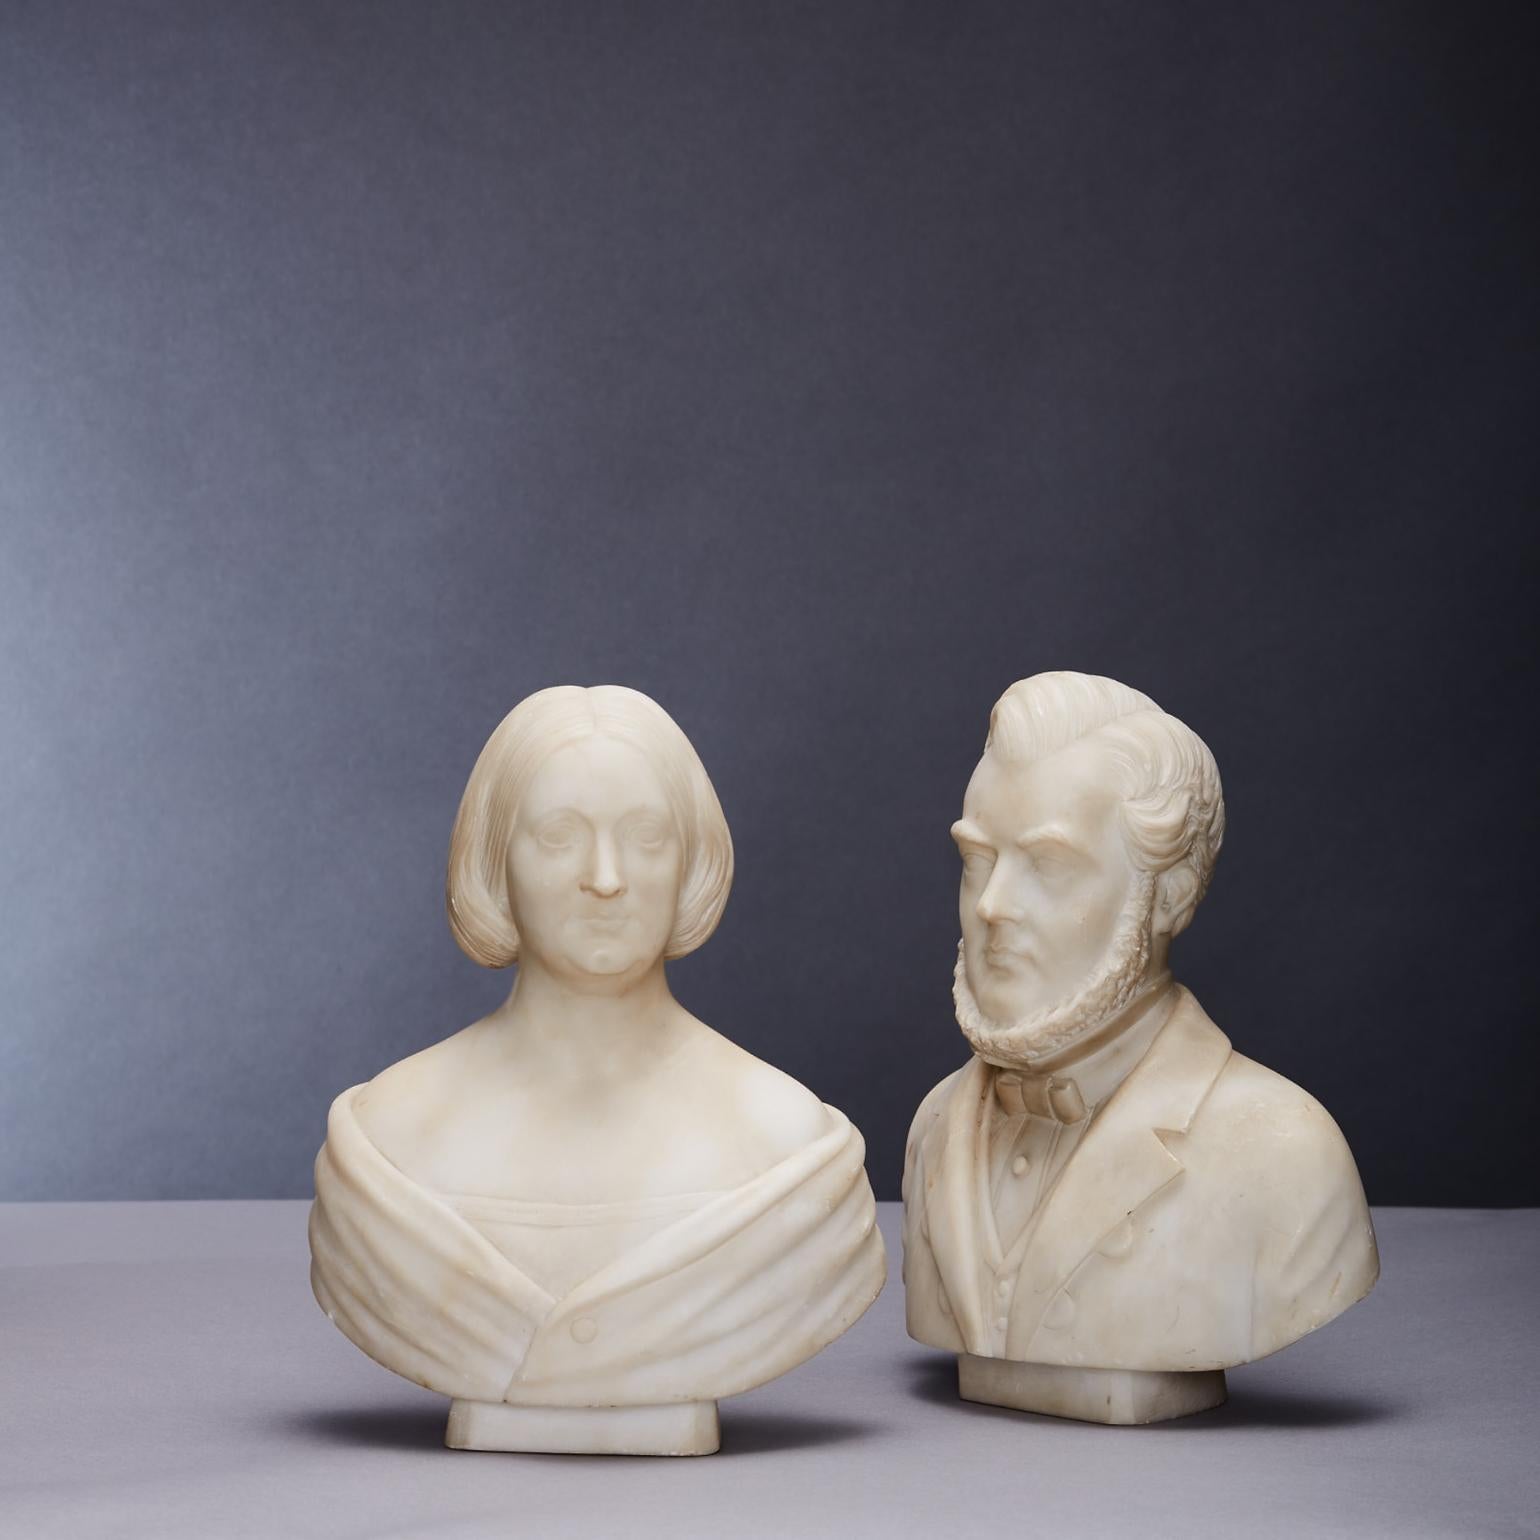 Deux bustes d'un couple d'un homme et d'une femme sculptés dans le marbre, style Biedemeier américain, seconde moitié du 19e siècle, signés au dos de chacun des bustes 